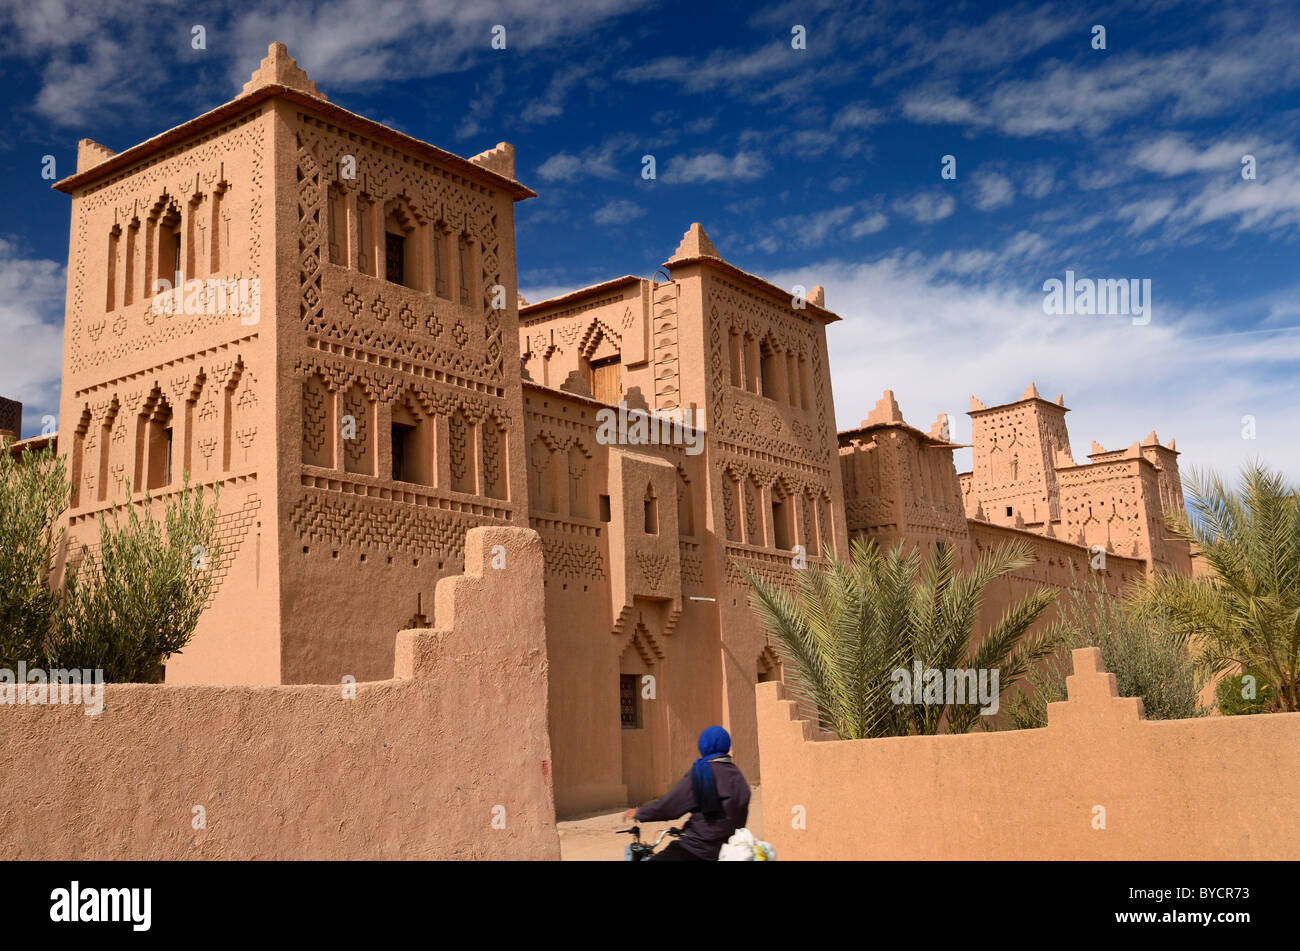 Reformado torres de la antigua herencia sitio kasbah amerhidl la tierra ocre en la fortaleza skoura oasis Marruecos Foto de stock